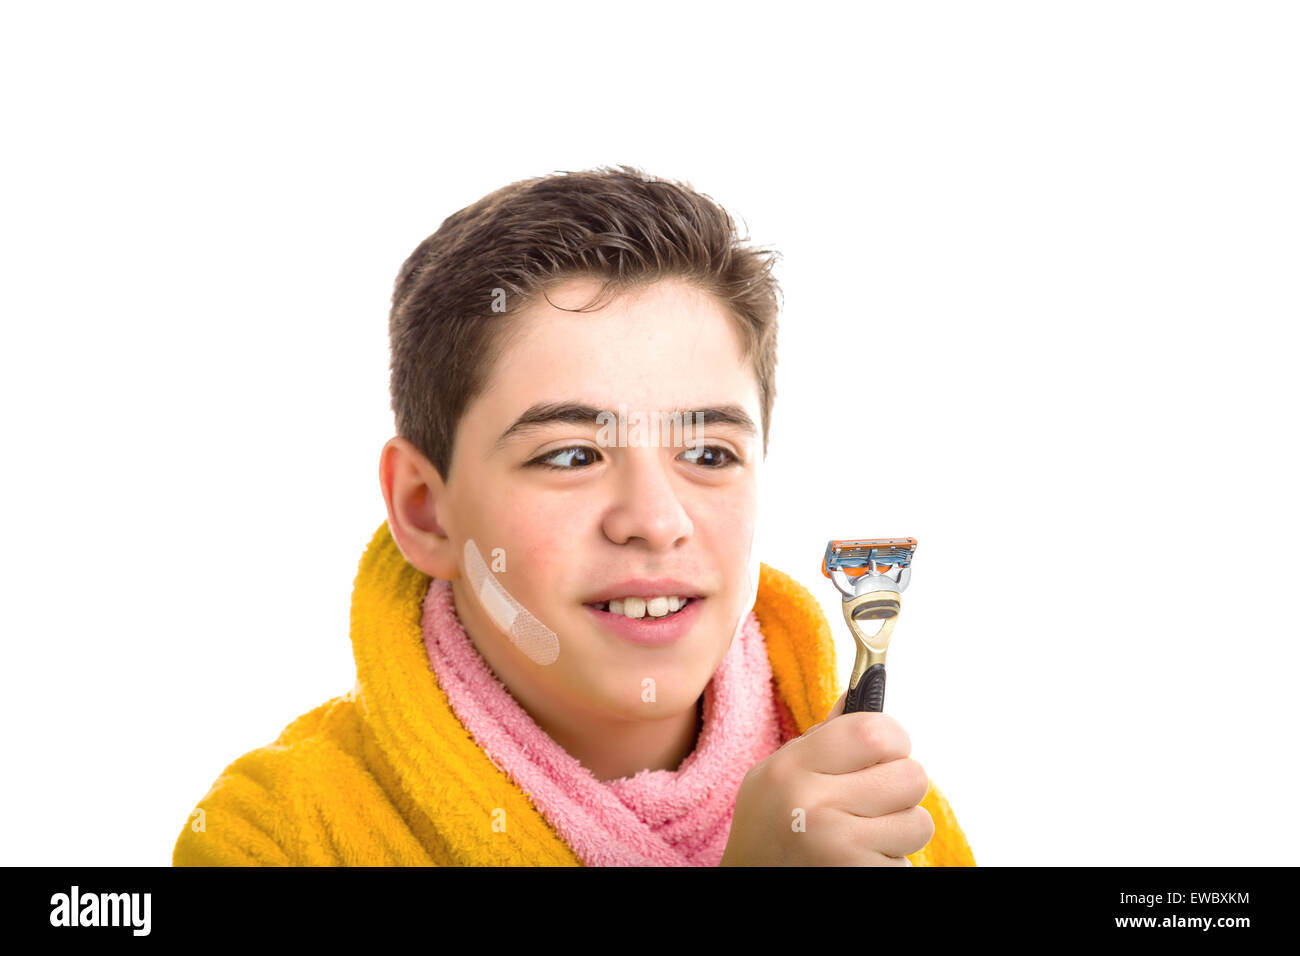 Liscia caucasico-pelato ragazzo indossa un accappatoio giallo con un asciugamano rosa intorno al suo collo: ha alcune patch sul suo volto sorridente e la guarda con gli occhi incrociati presso il rasoio ha utilizzato per la rasatura Foto Stock